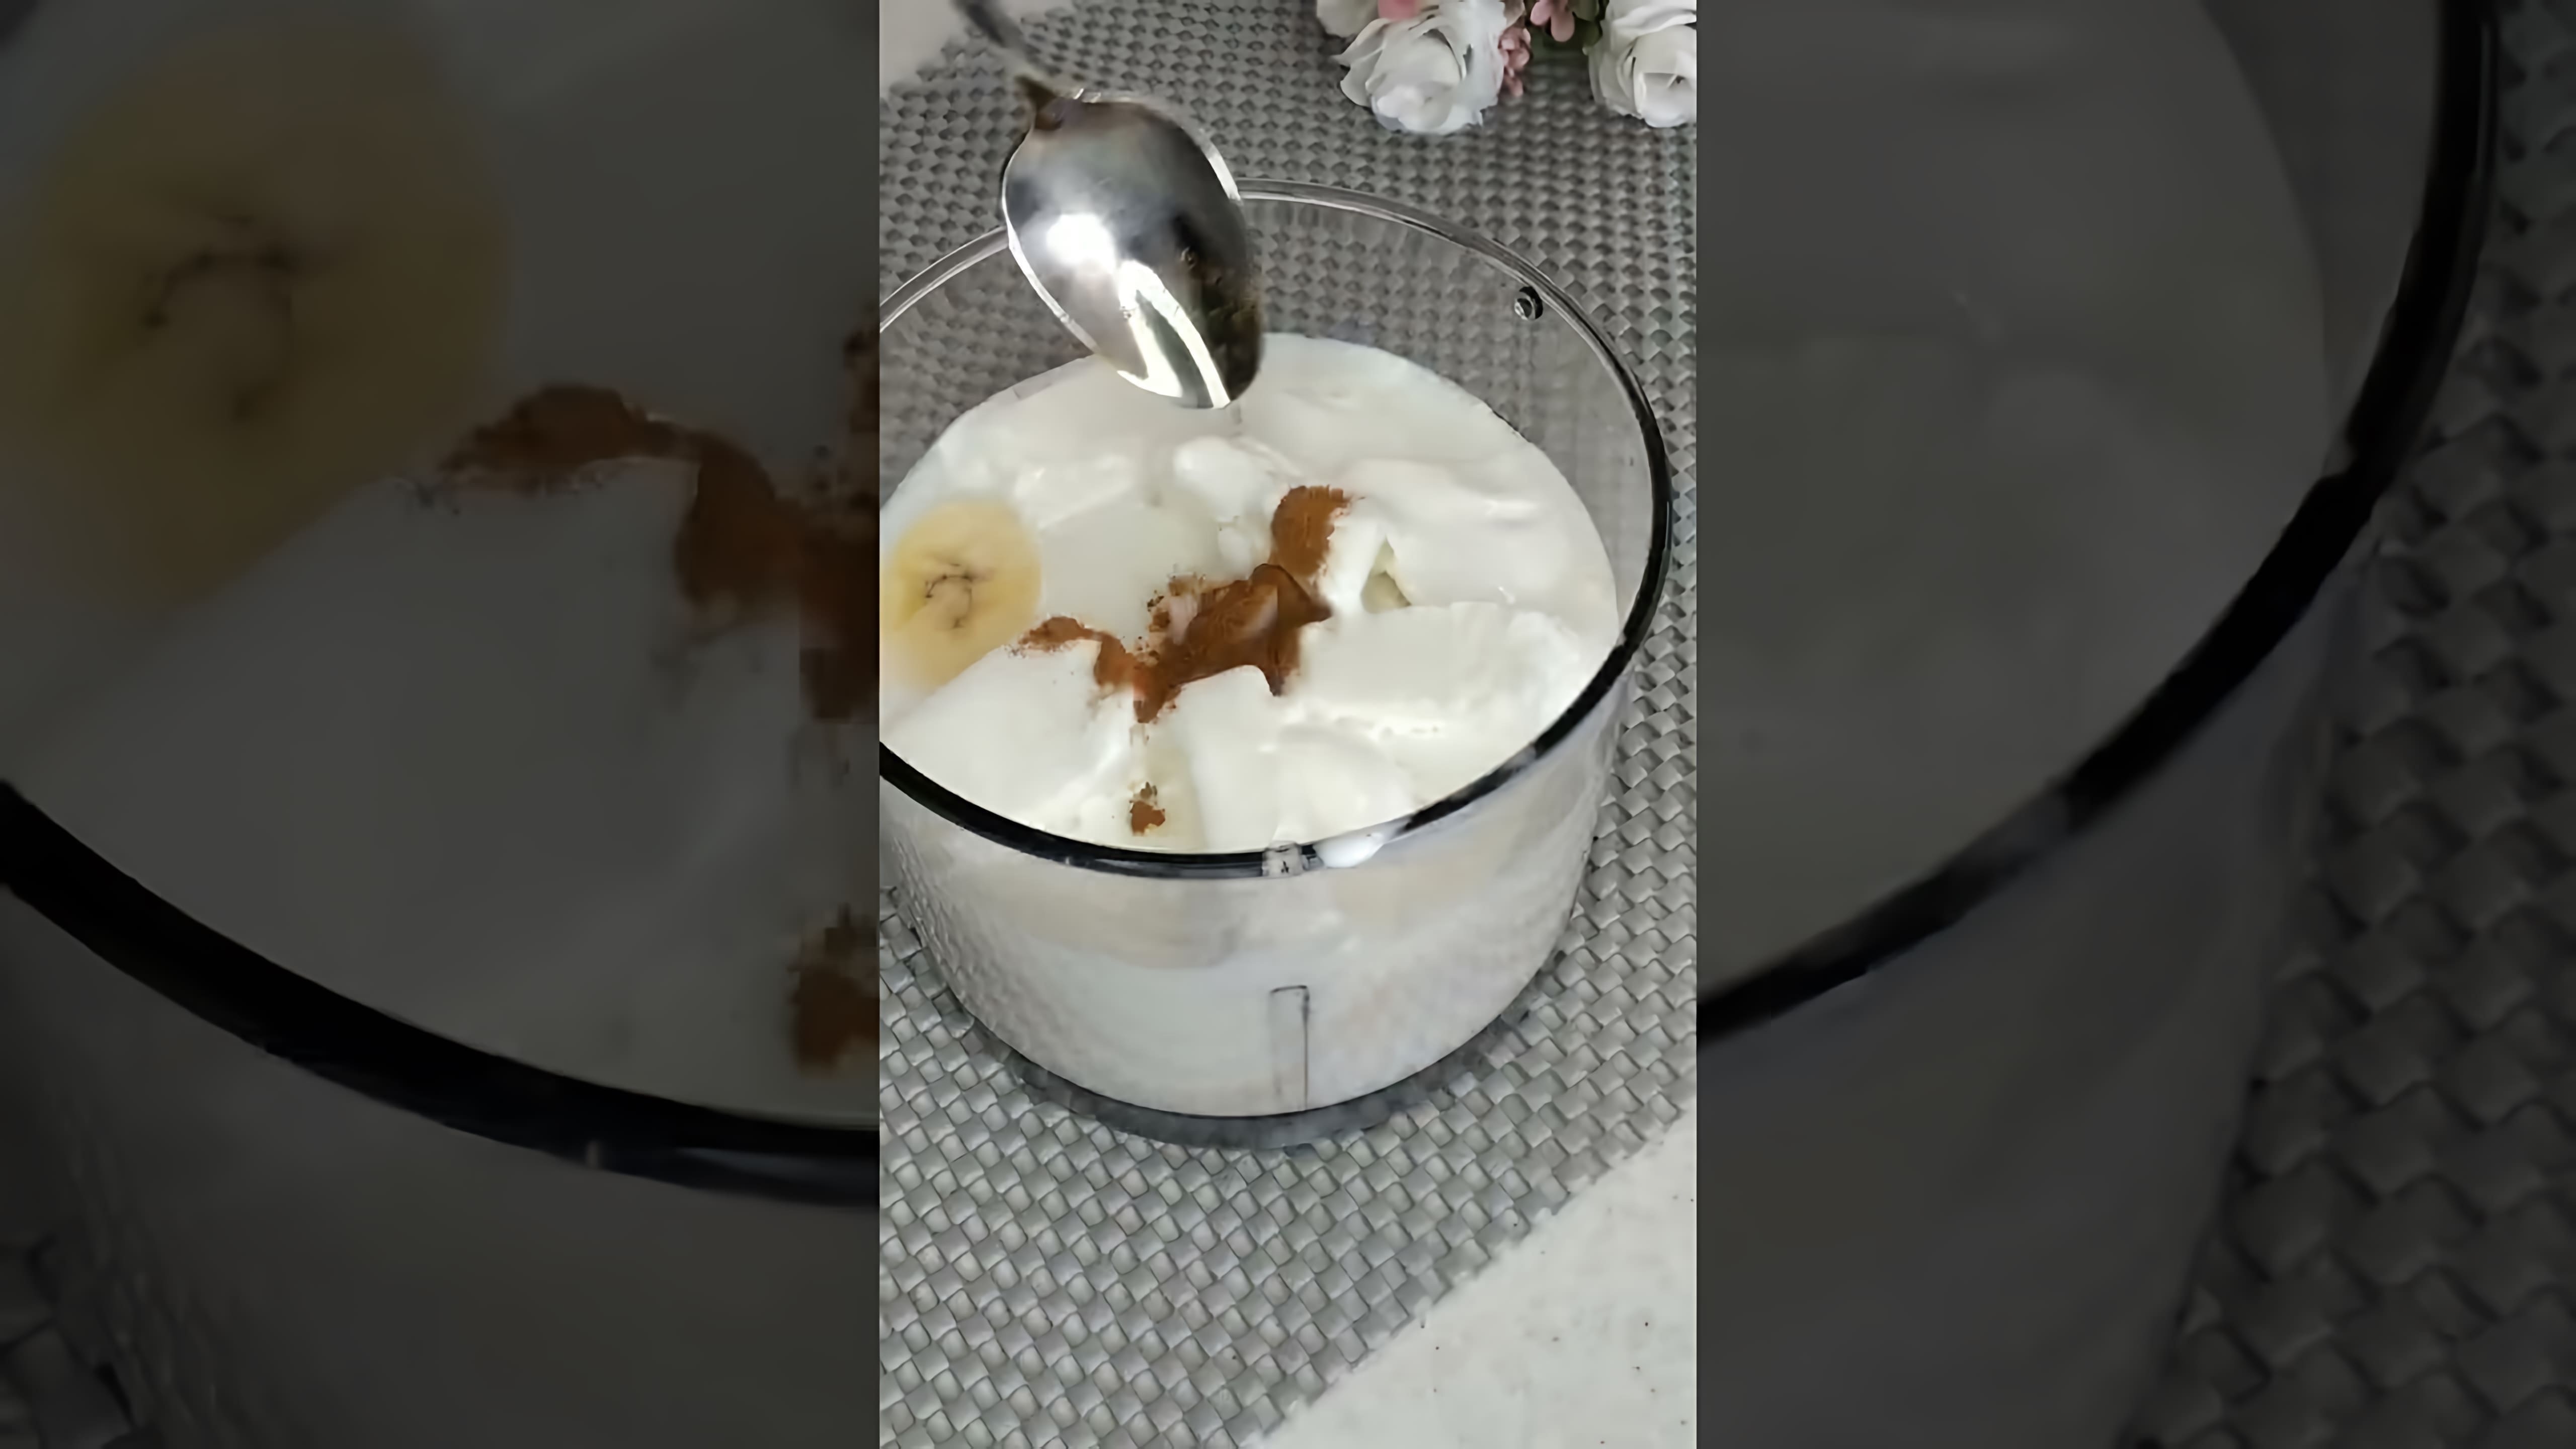 Видео рецепт бананового молочного коктейля